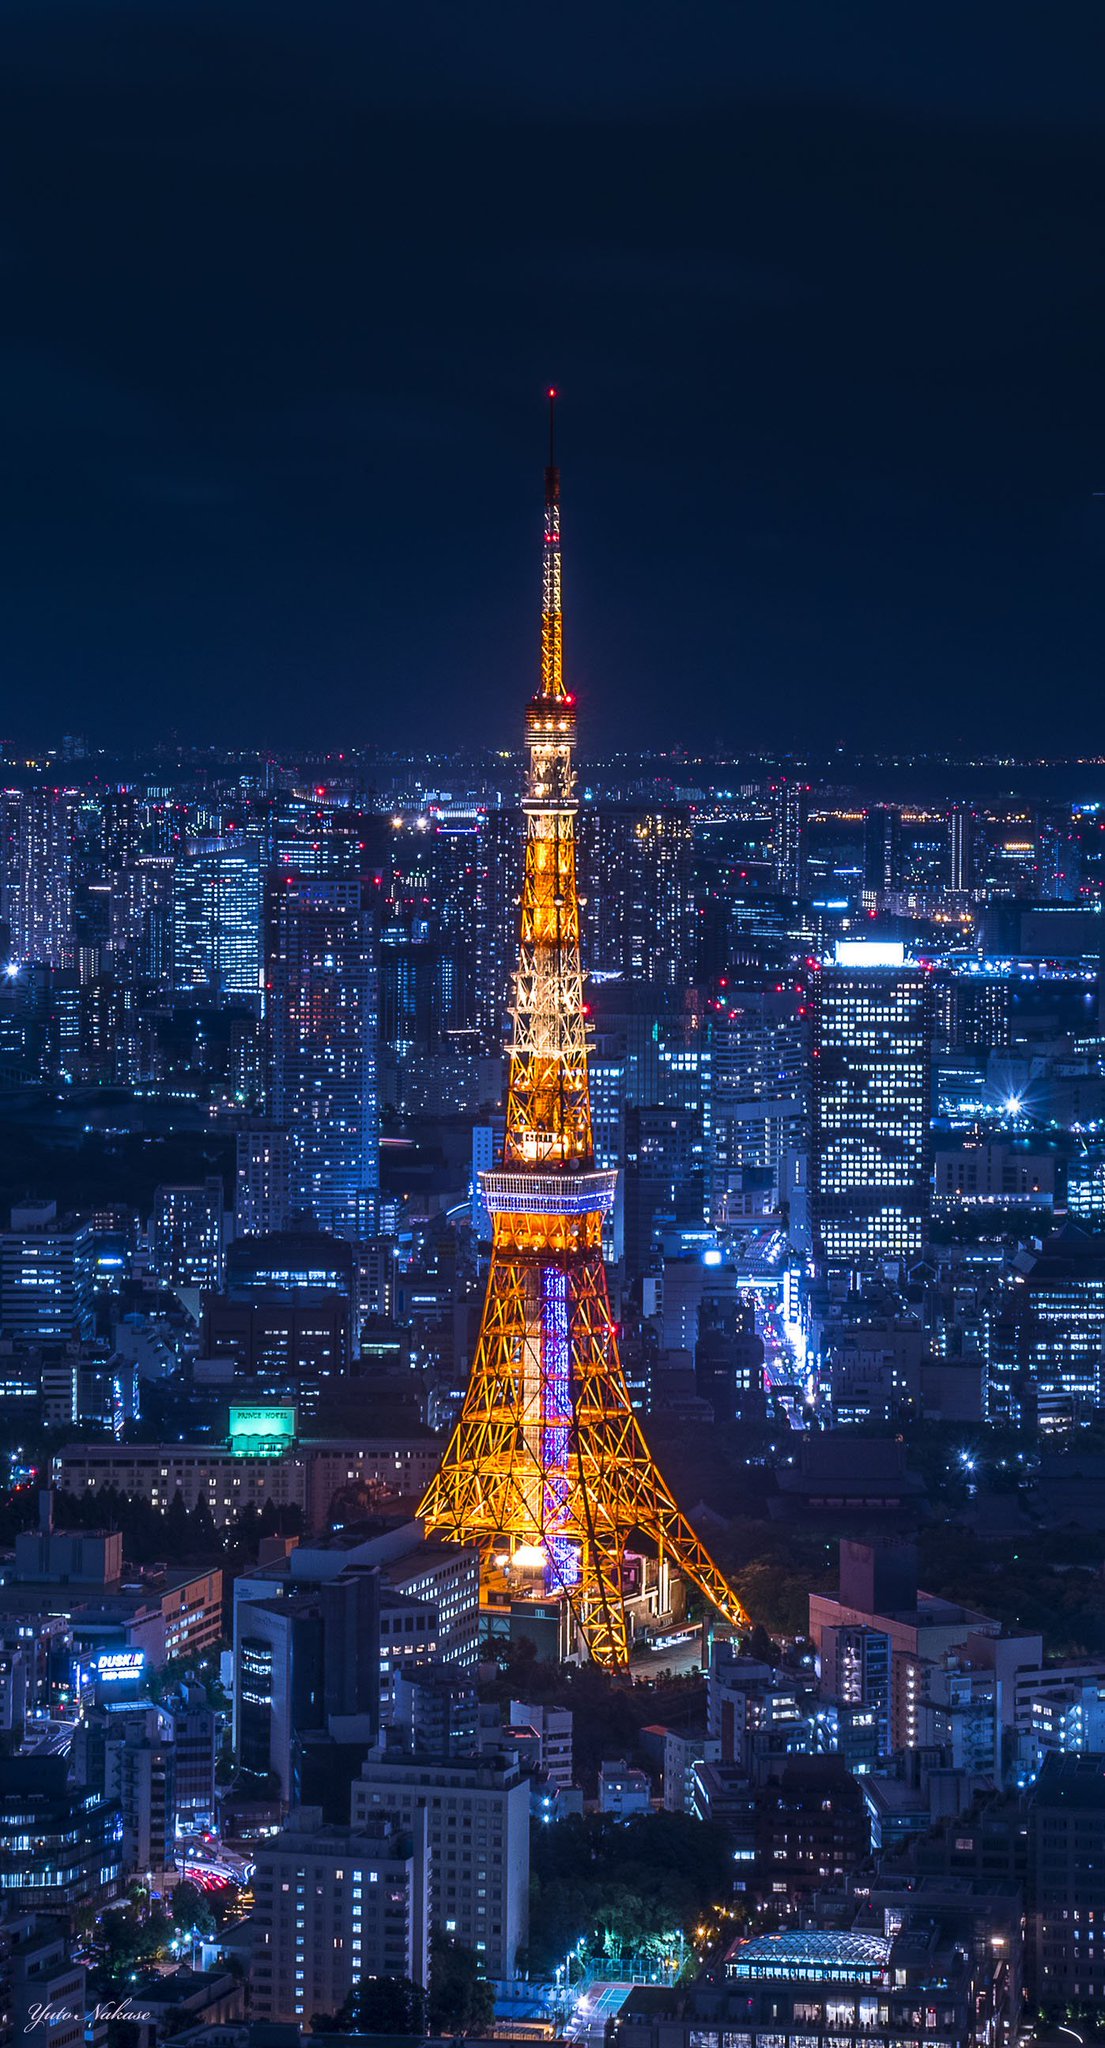 中瀬雄登 写真教室やってます 東京タワー大好きです 六本木ヒルズからと晴海ふ頭からの夜景です スマホの壁紙として使用できるサイズです Iphone壁紙 ニッポンを撮る 東京タワー 六本木ヒルズ 晴海ふ頭 夜景 T Co Mb7eopip